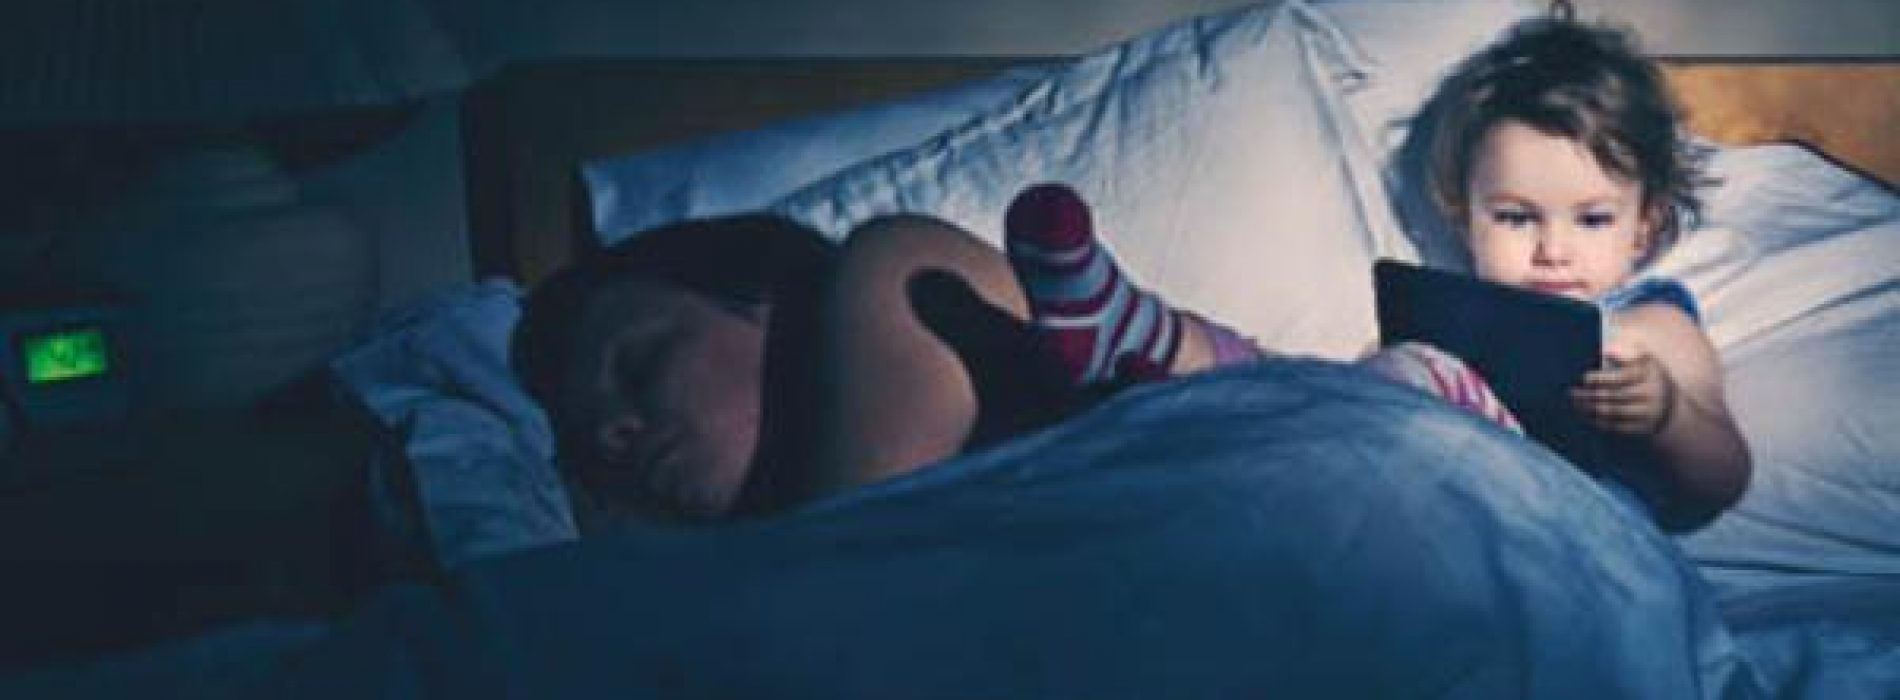 Twee keer per dag slapen is beter voor ons, stellen wetenschappers